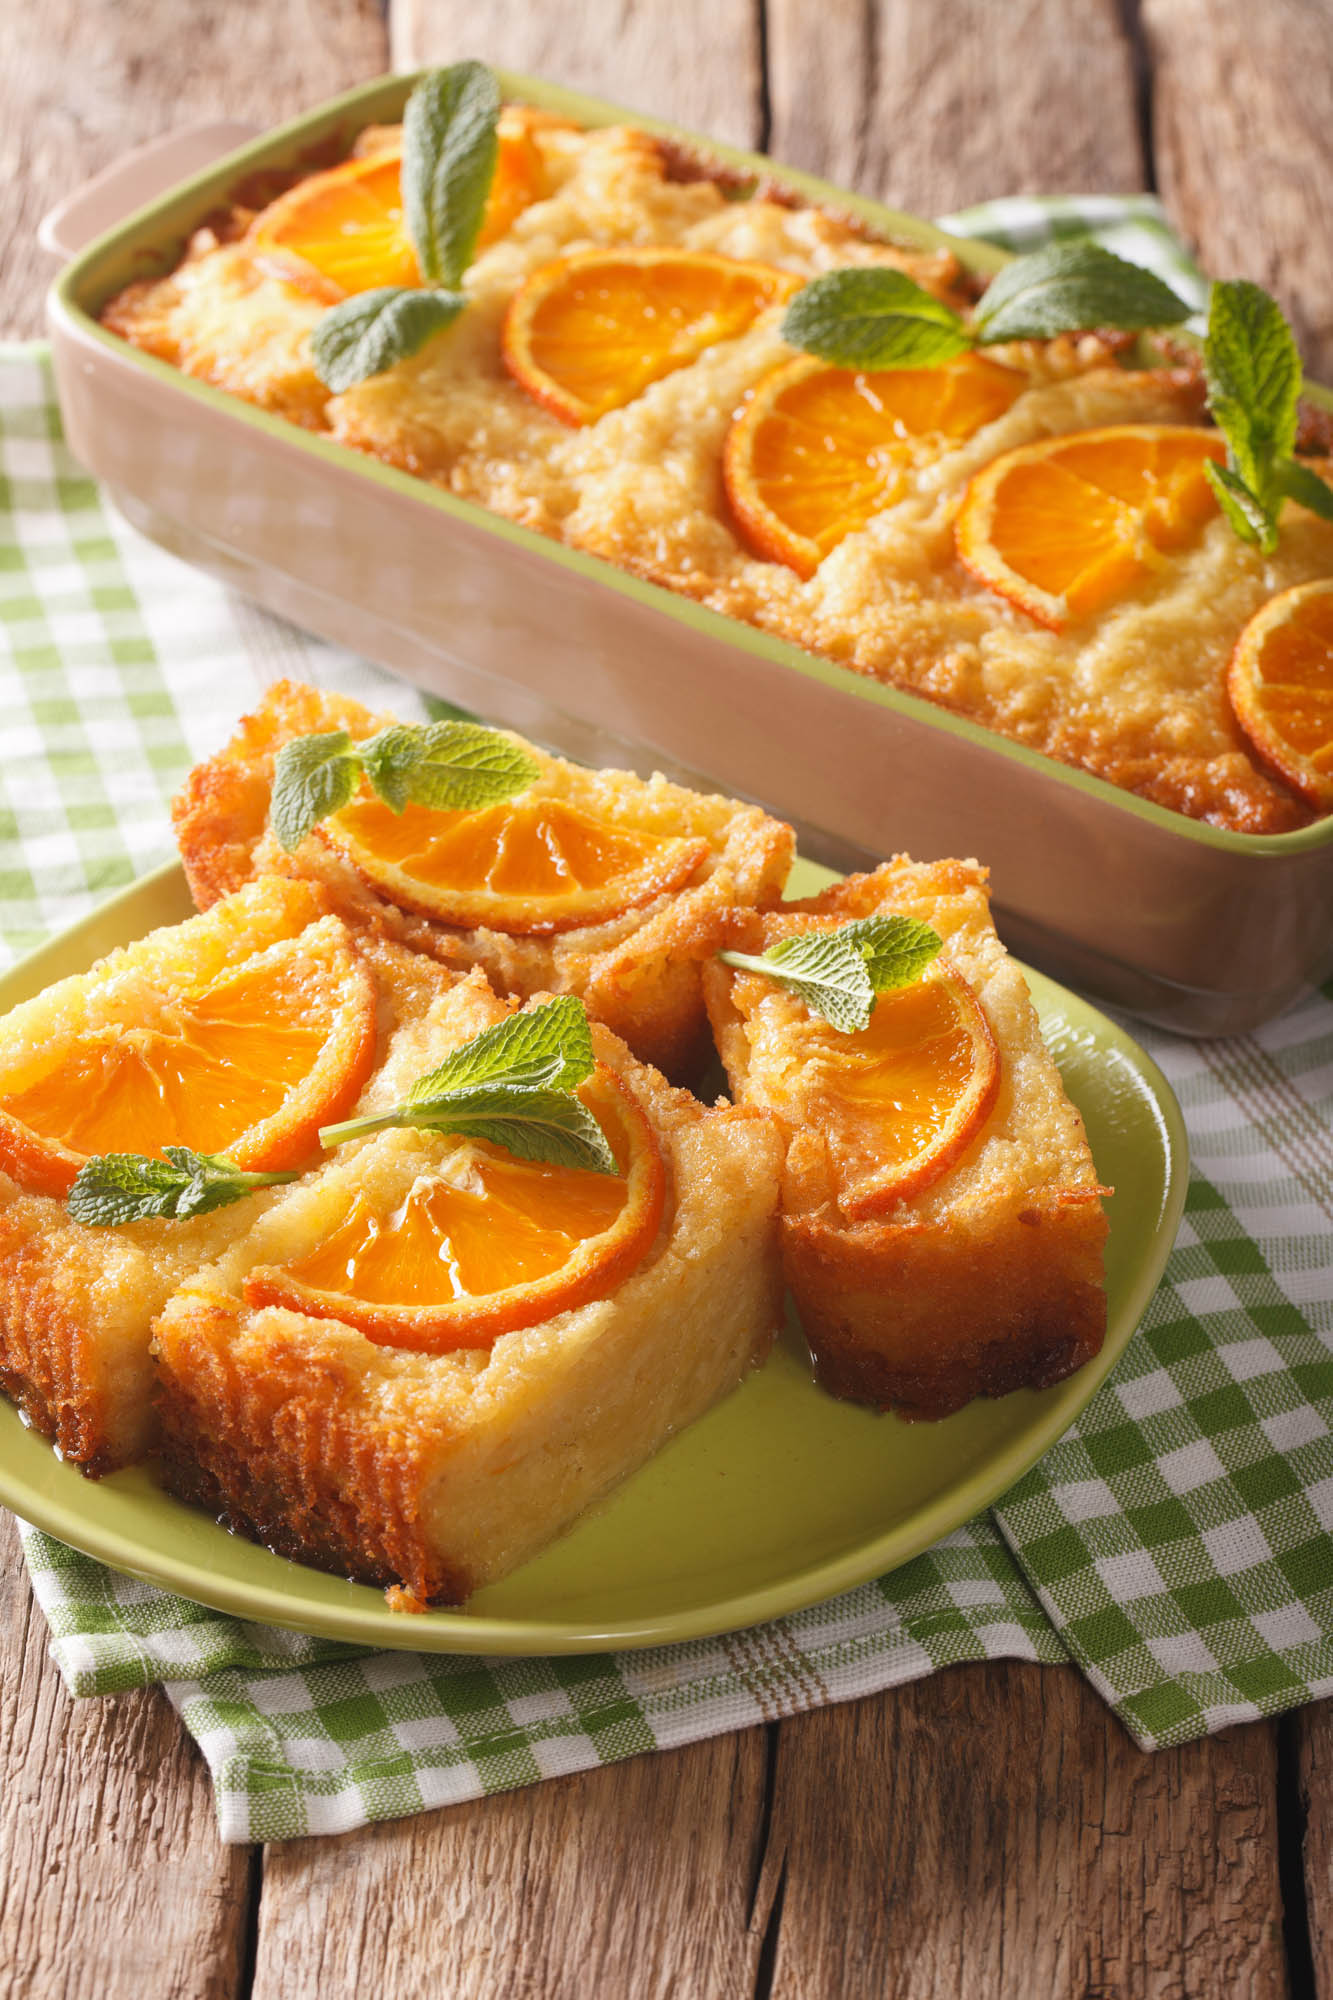 tradycyjne greckie ciasto pomarańczowe ozdobione pomarańczami i podane na talerzyku